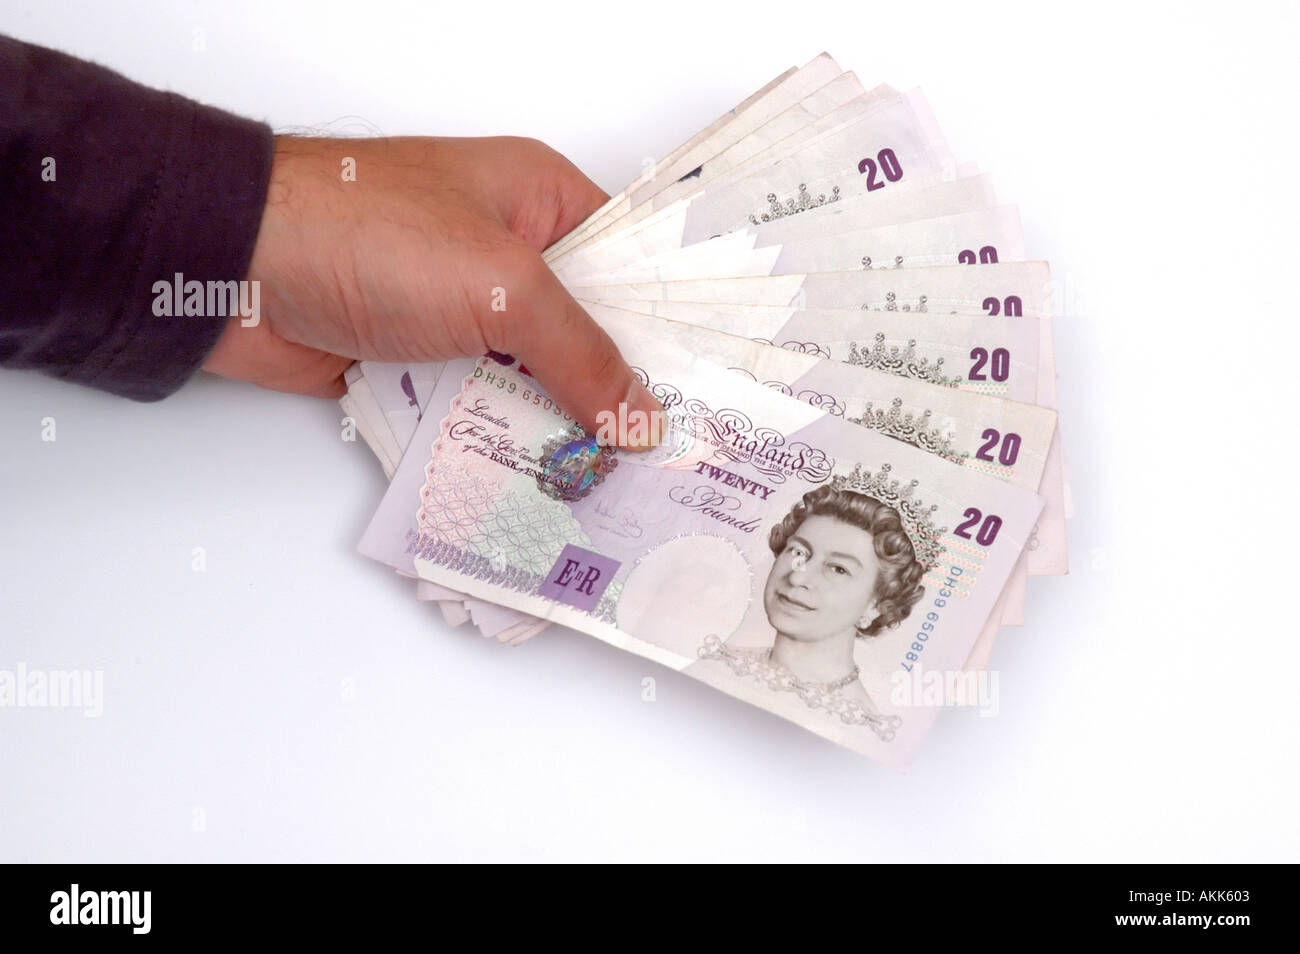 Asiatische mans Hand hält viel von 20 Pfund Sterling-Noten auf weißem Hintergrund Stockfoto